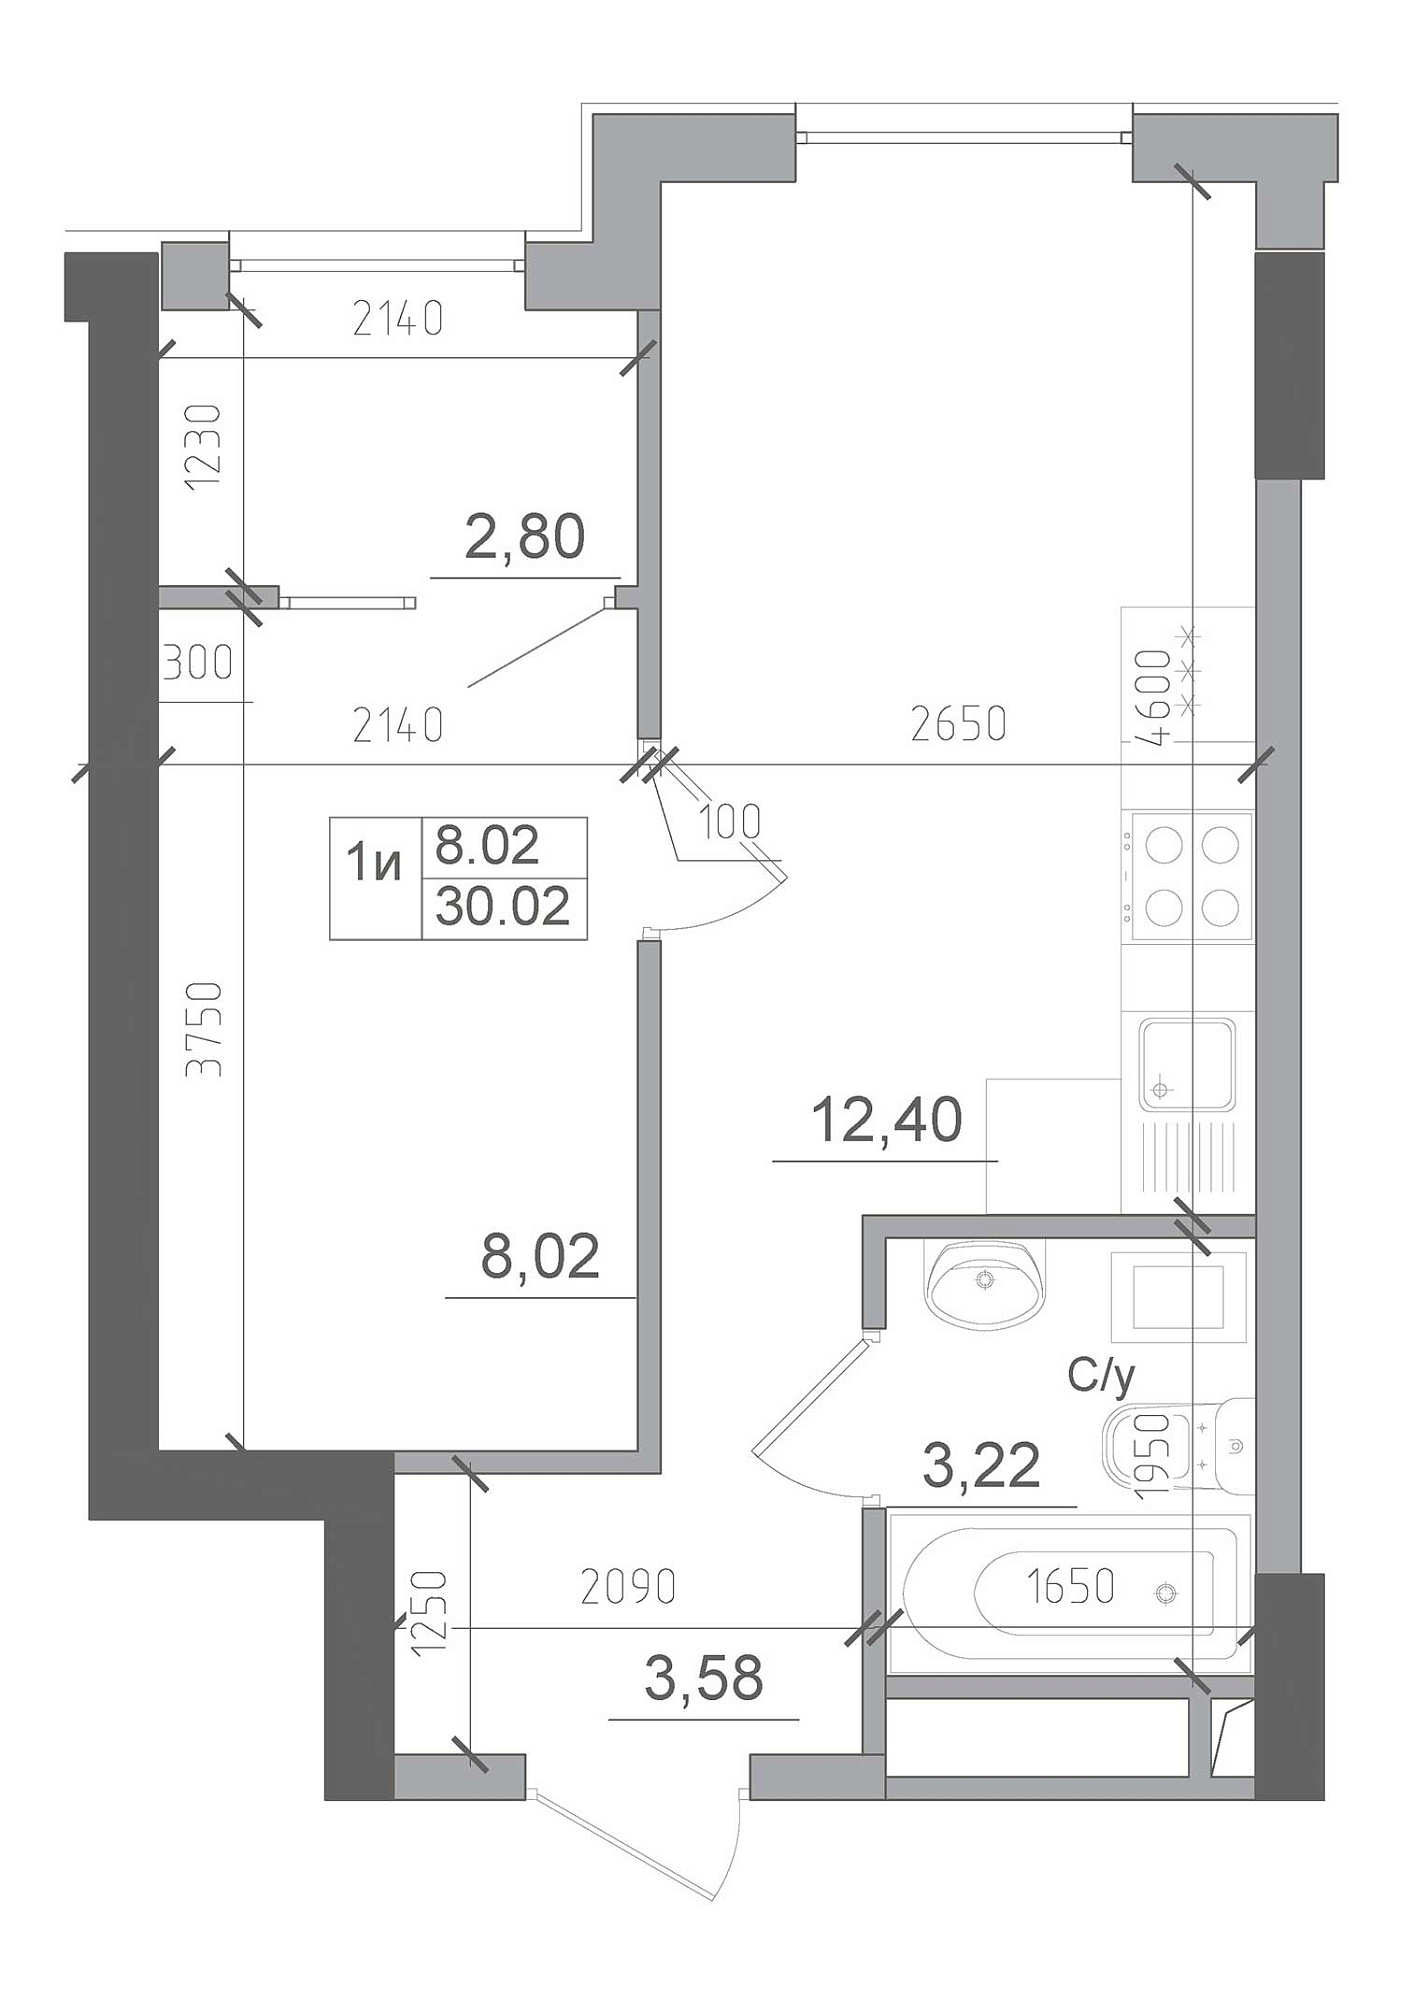 Планировка 1-к квартира площей 30.02м2, AB-22-08/00014.